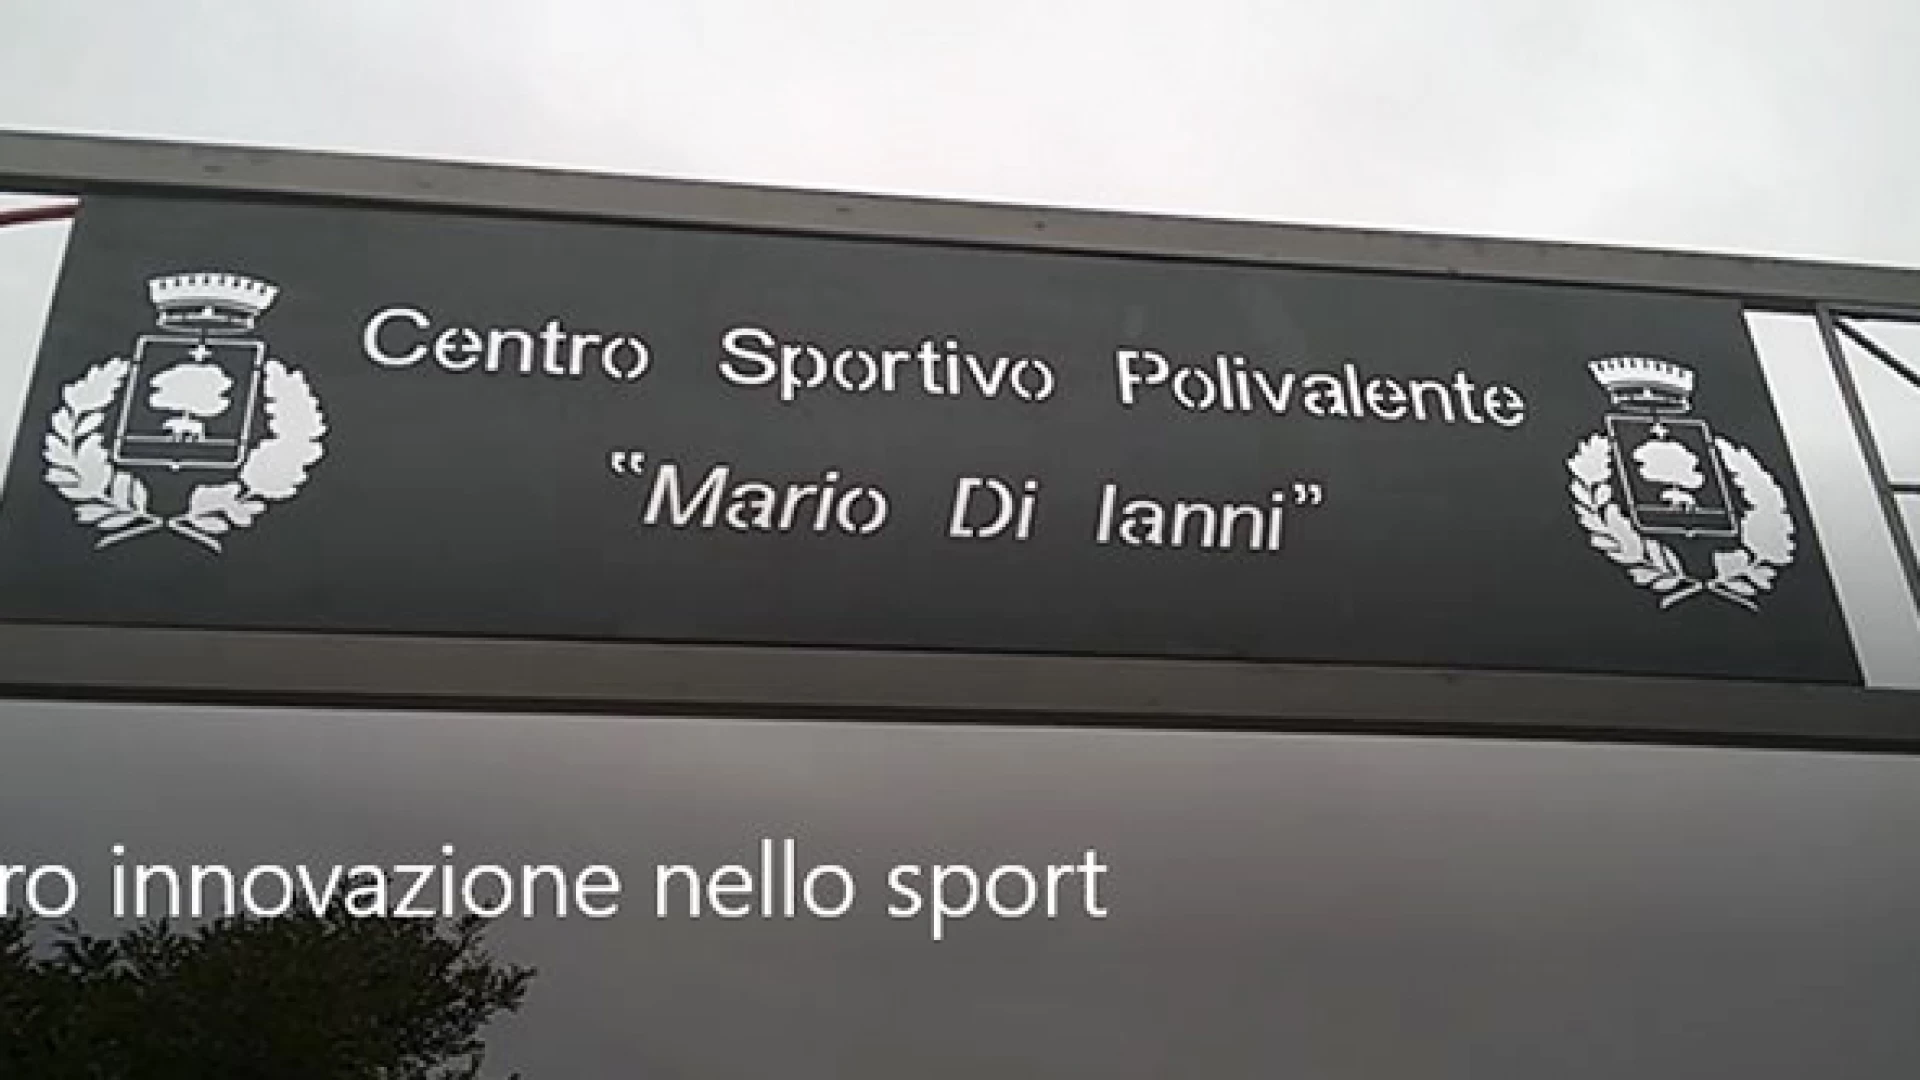 Cerro al Volturno: innovazione nello sport. Il centro dedicato a "Mario Di Ianni" quasi completato. Guarda il nostro servizio video